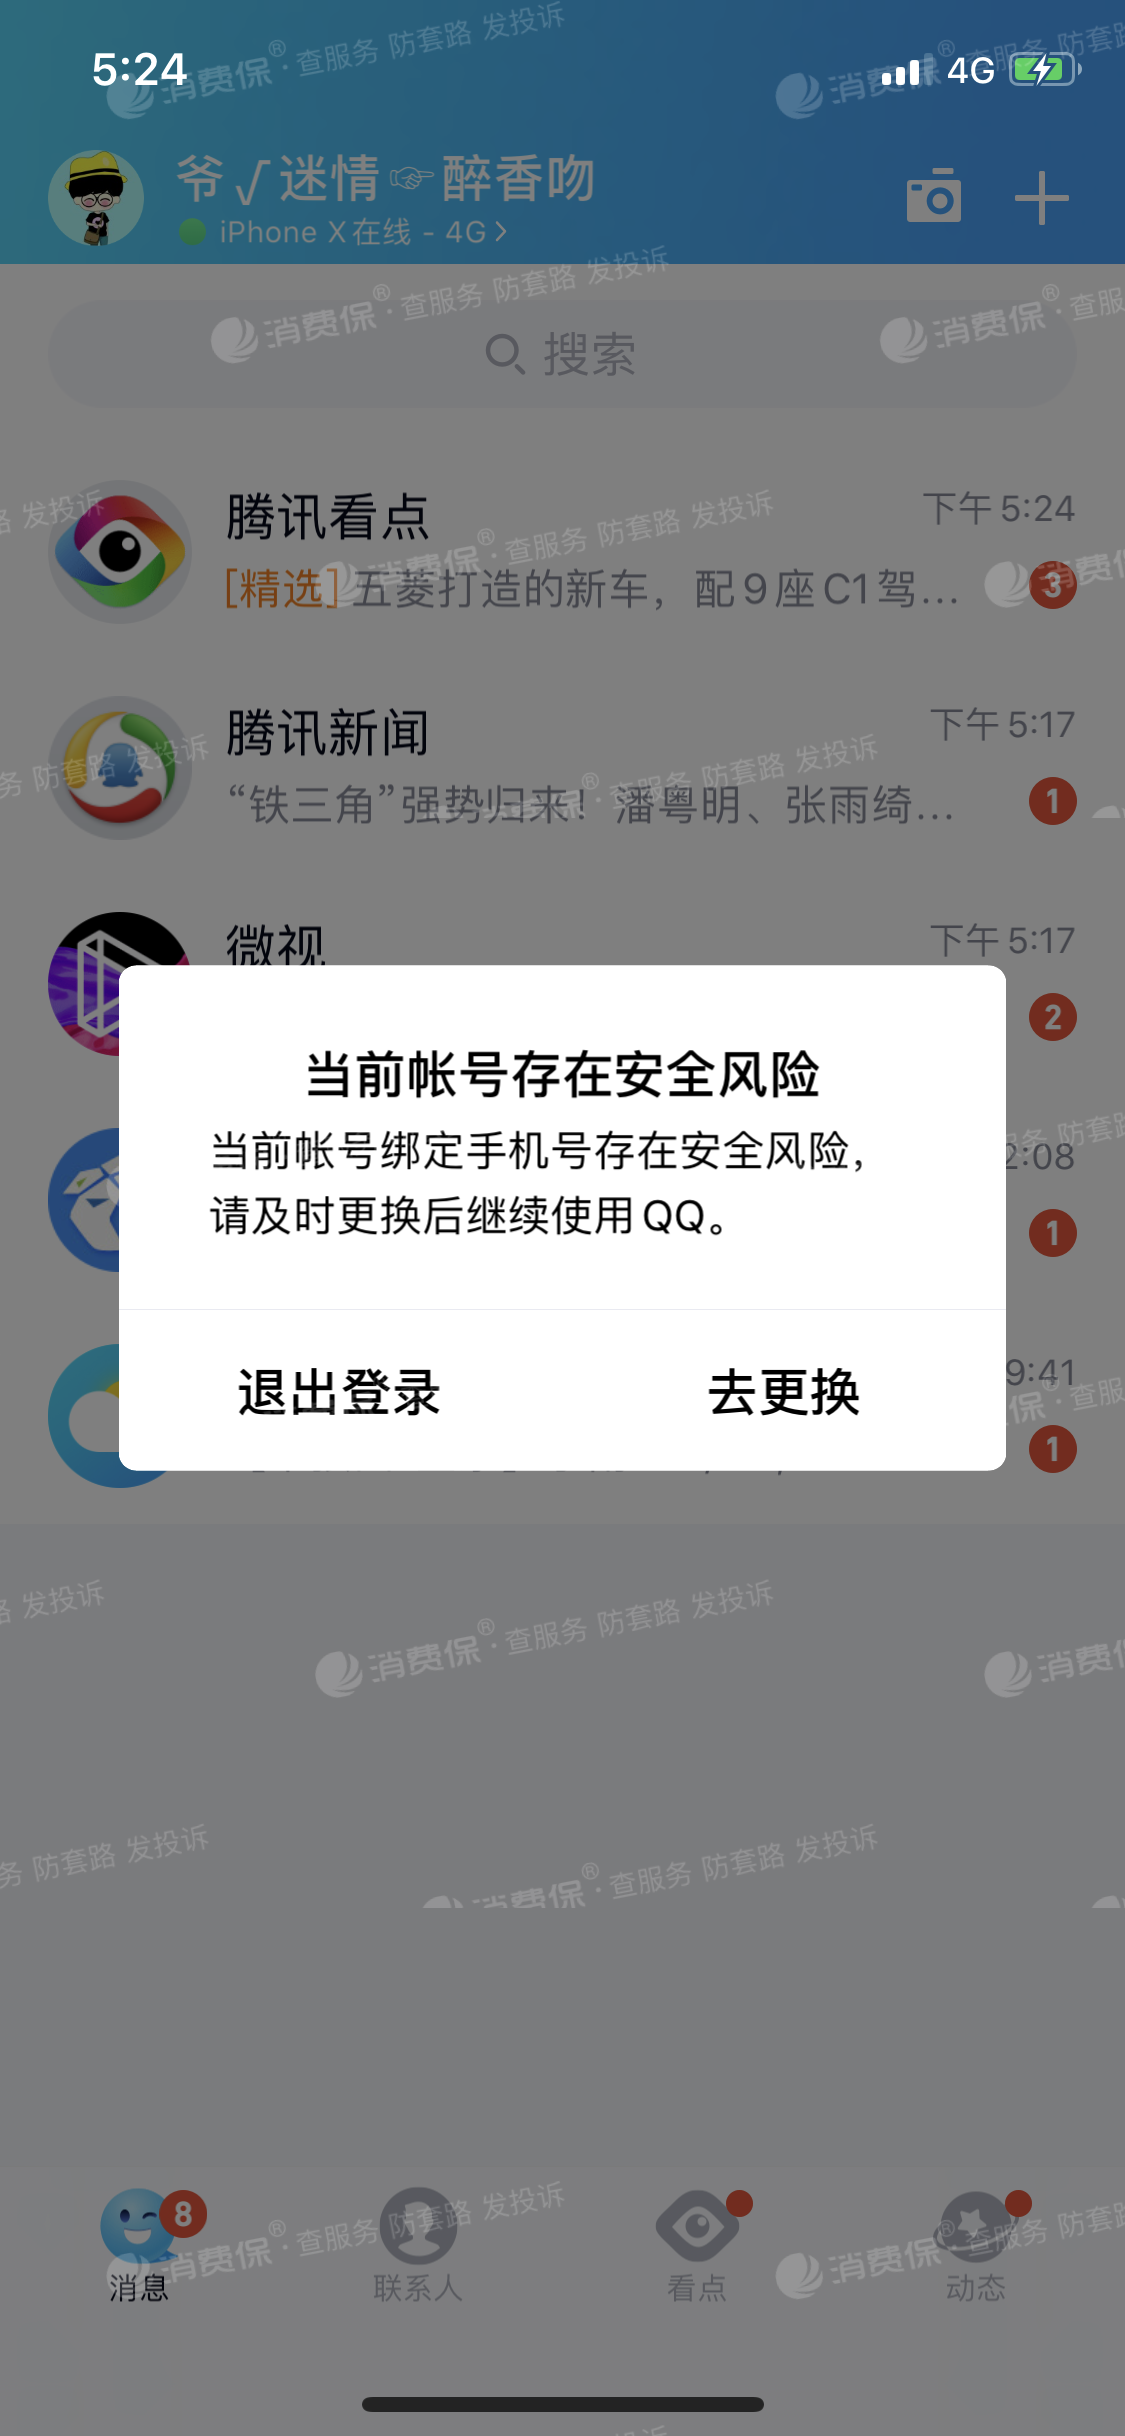 腾讯qq账号功能限制